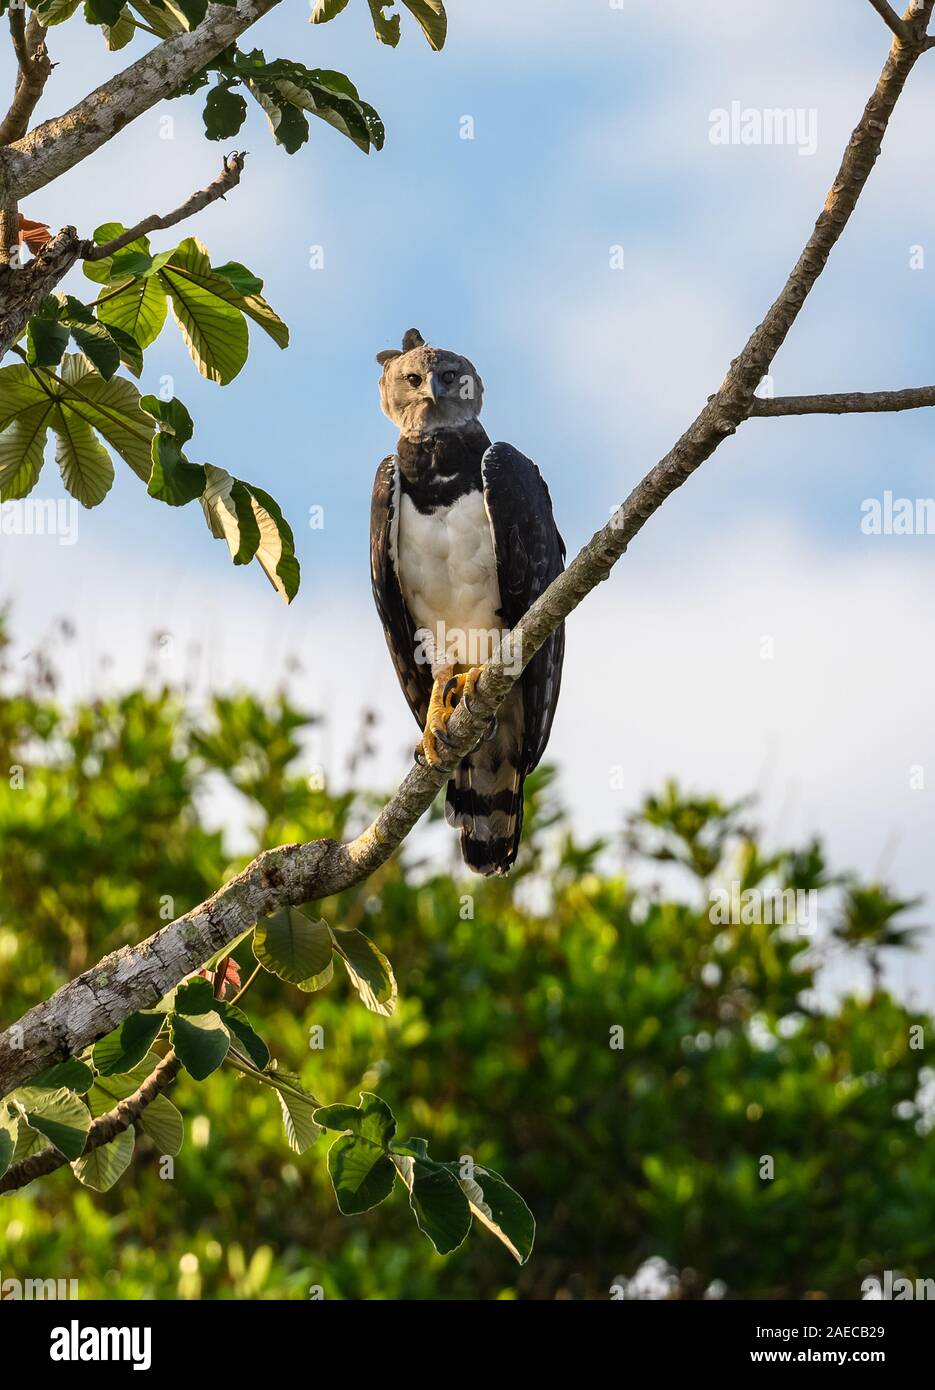 Une Harpie sauvage (Harpia harpyja) perché sur un arbre Cecropia dans la forêt amazonienne. Cangucu, de l'État de Tocantins, au Brésil. Banque D'Images